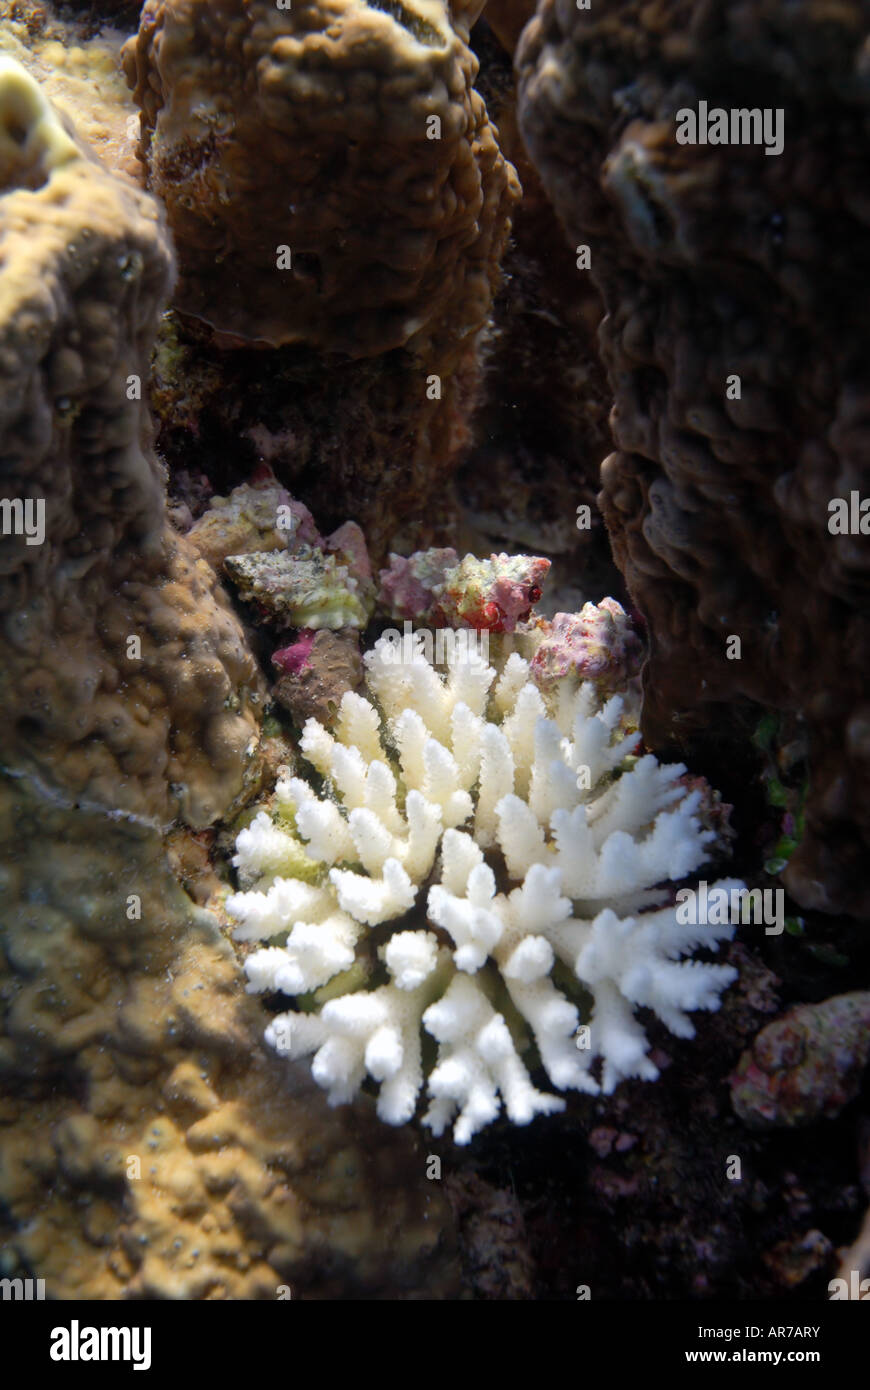 Alimentazione di aggregazione del corallo viola mangiare lumaca (Drupella cornus) accanto al consumo di colonie di corallo bianco (scheletro) Foto Stock